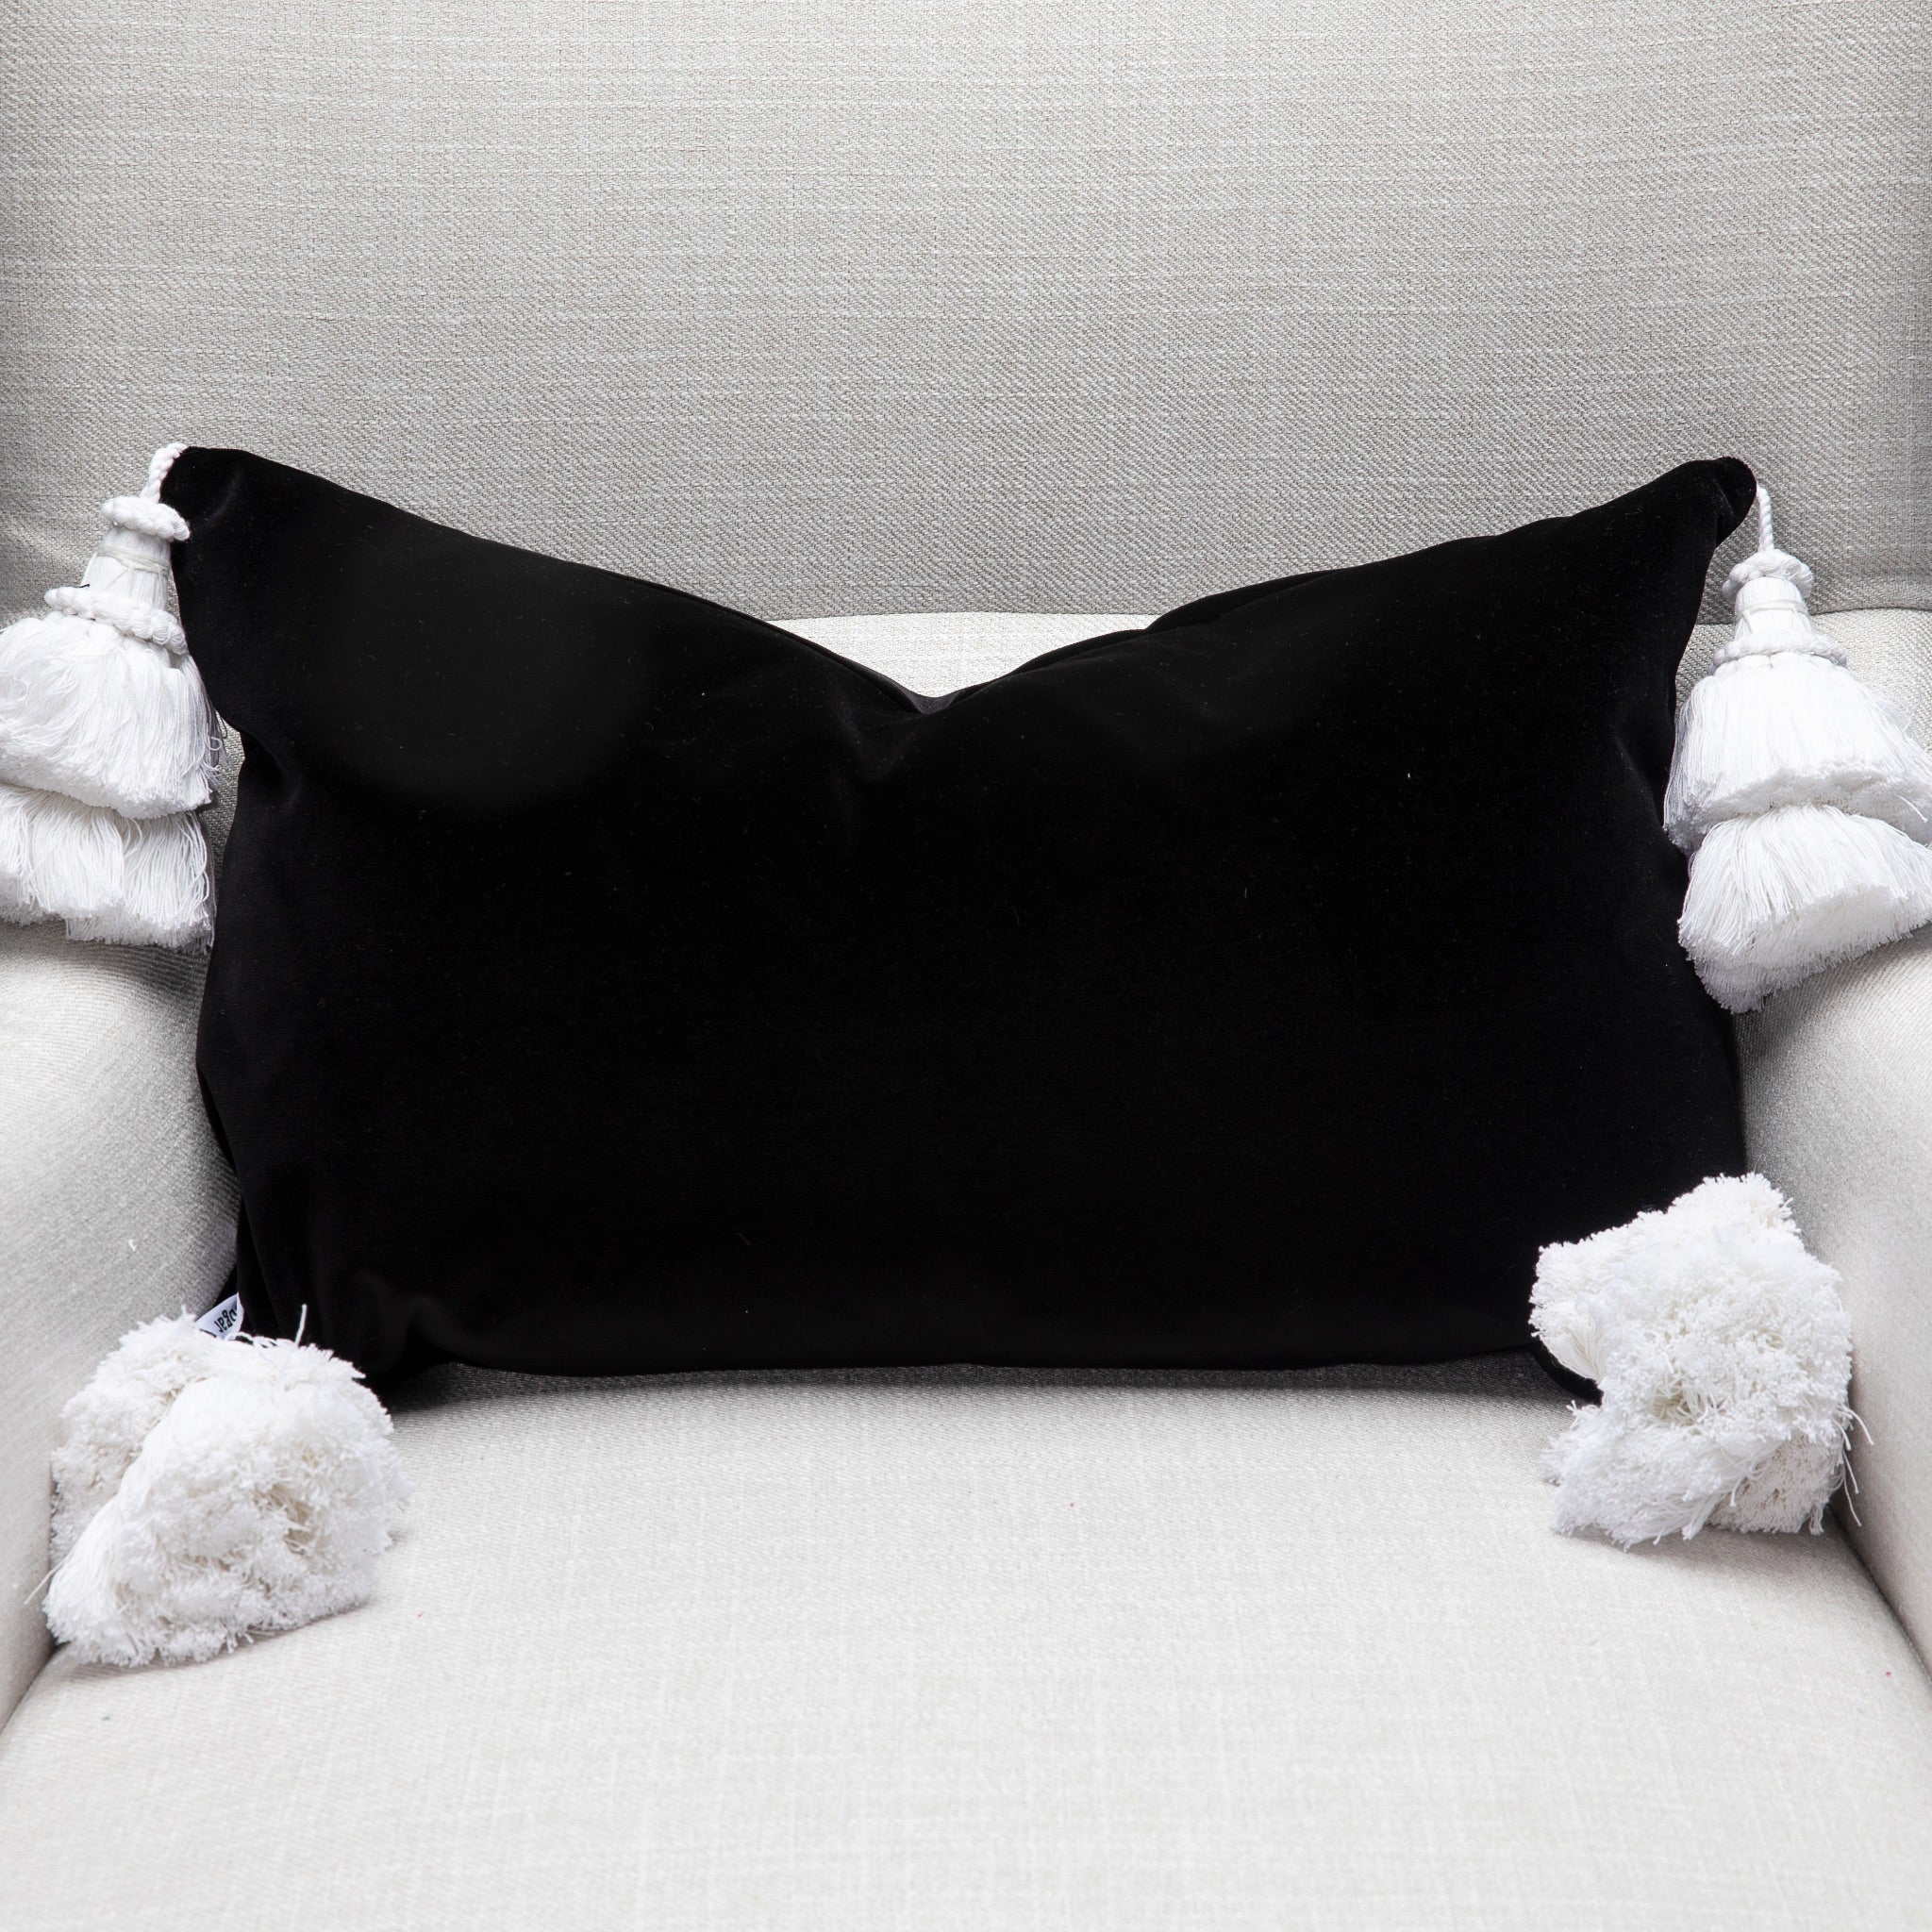 Black Velvet Pillow Cover With Handmade Tassels